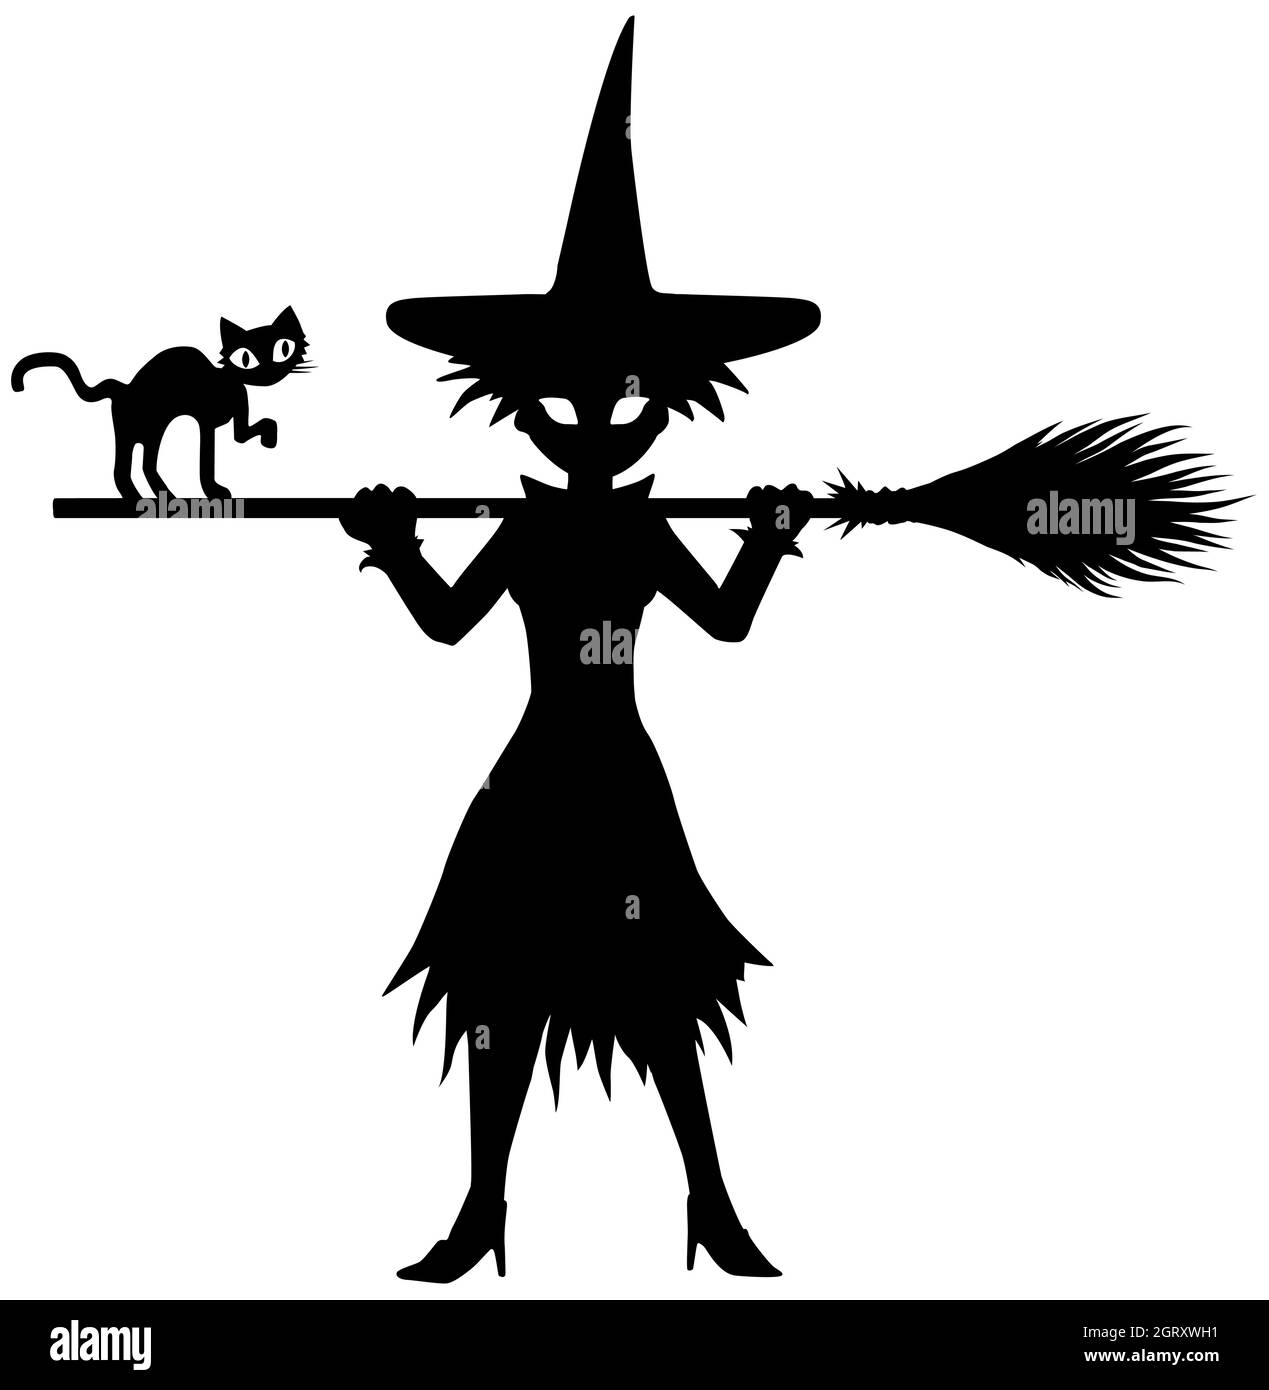 Junge Hexe posiert mit Broomstick auf Schultern Figur Silhouette Schablone schwarz, Vektor-Illustration, vertikal, über weiß, isoliert Stock Vektor